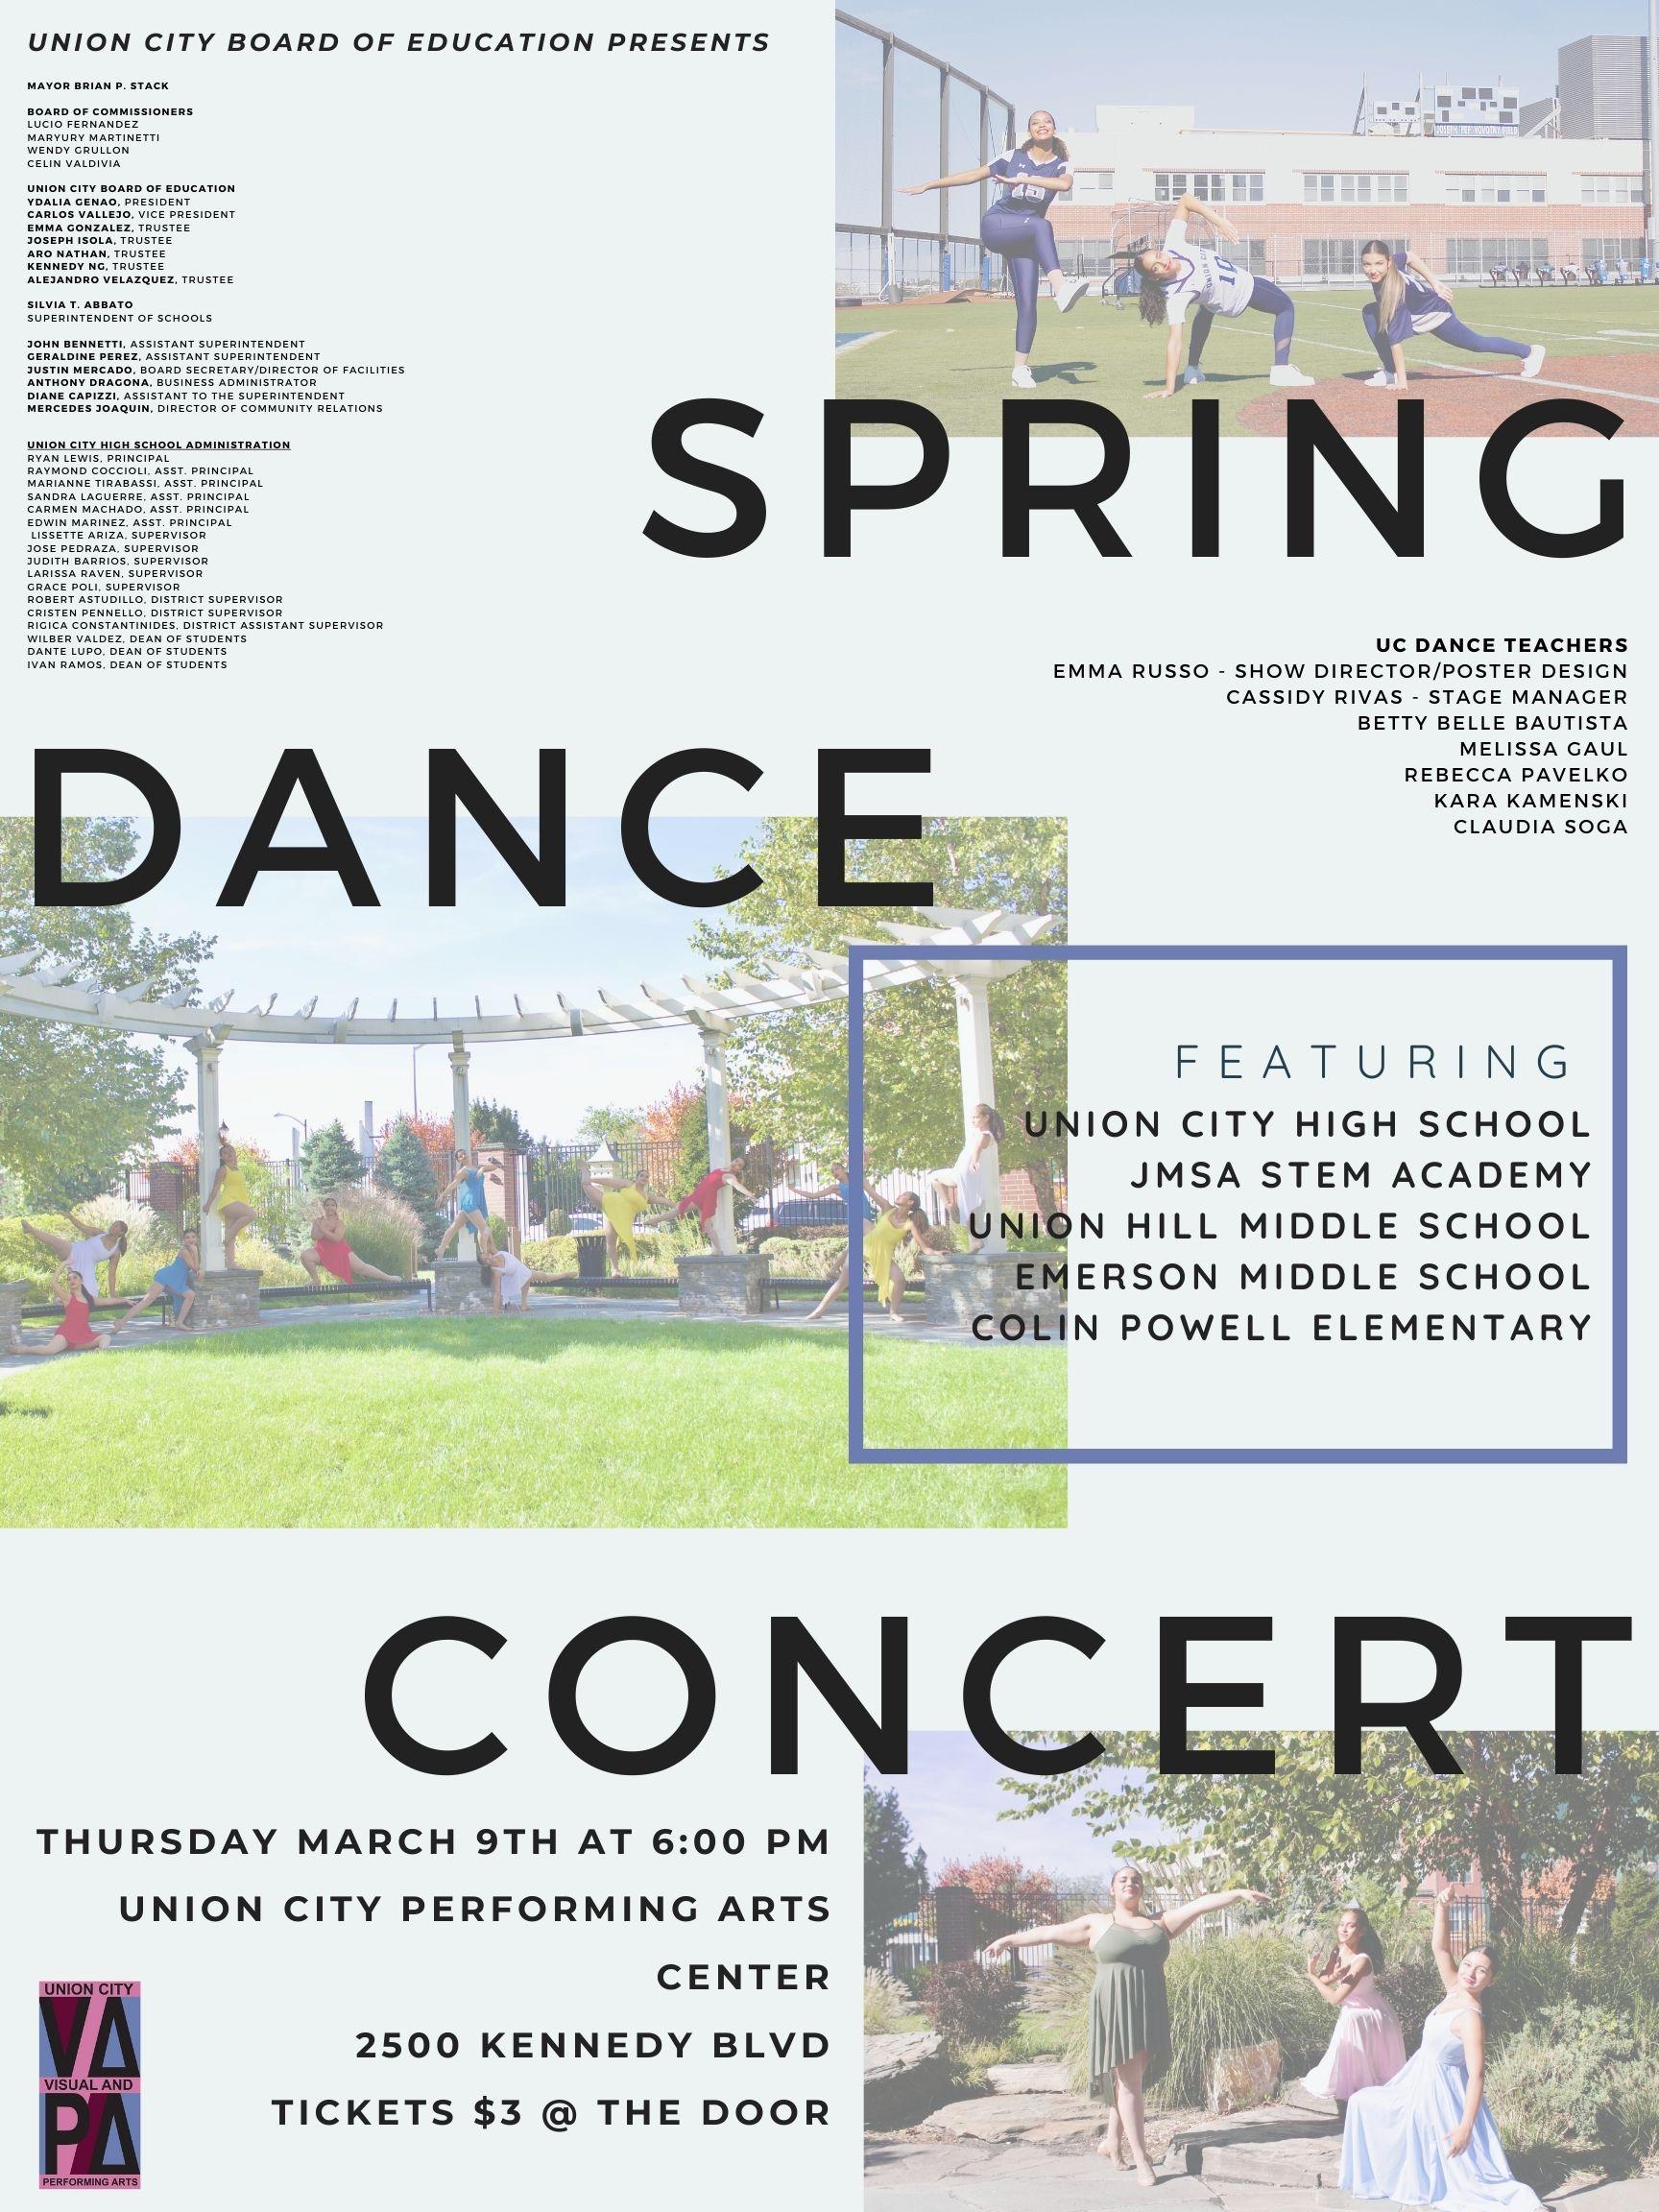 Spring Dance Concert Reminder For Thursday March 9, 2023